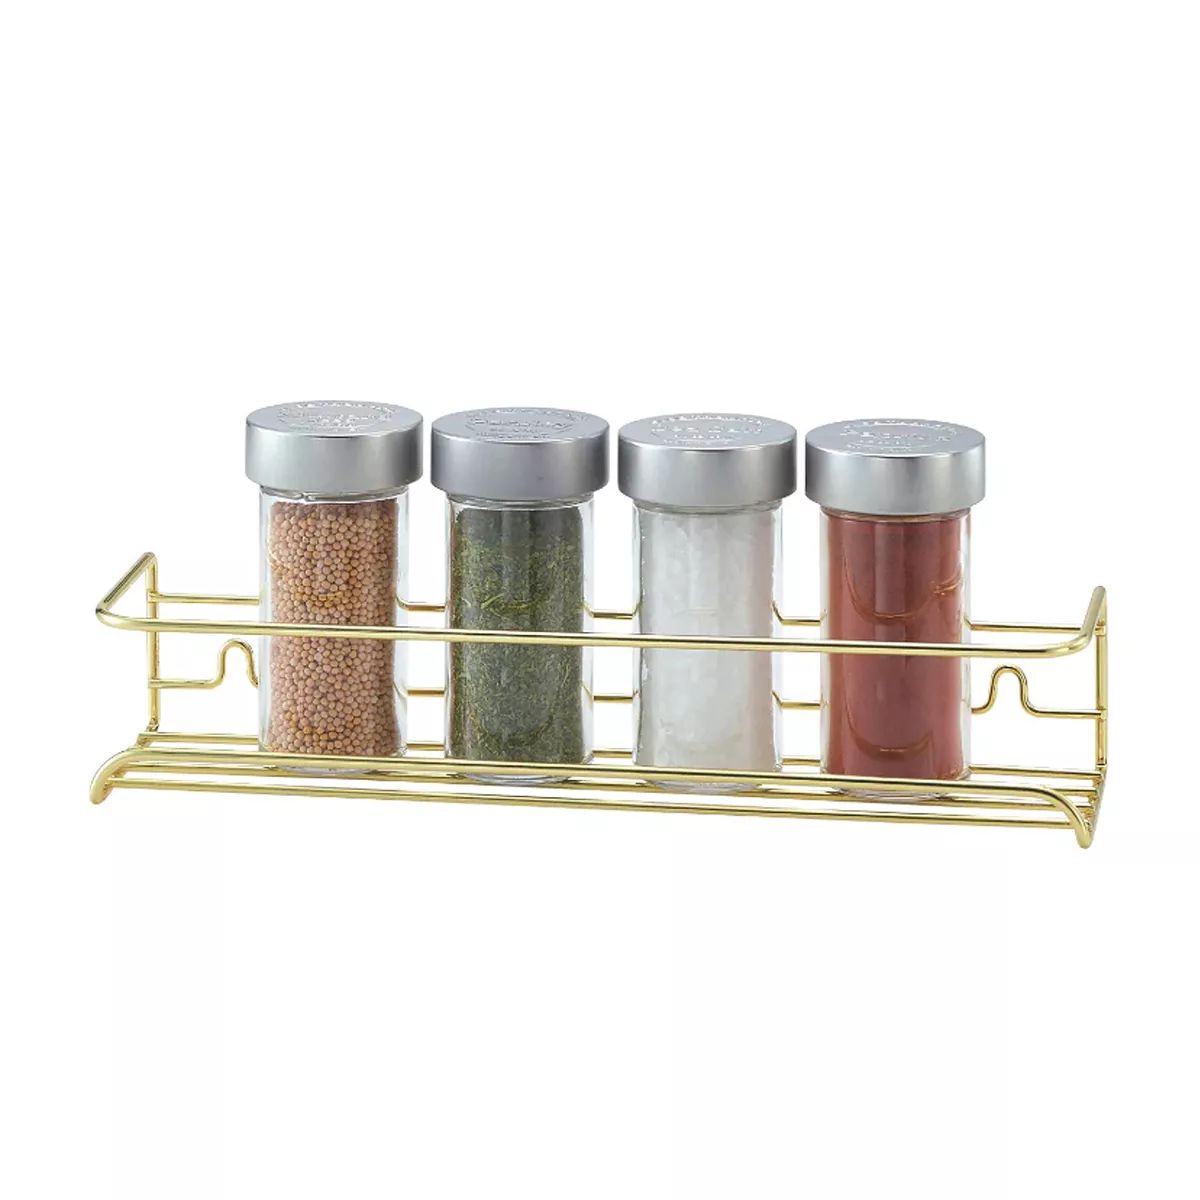 Better Houseware Spice Shelf, Gold. | Target